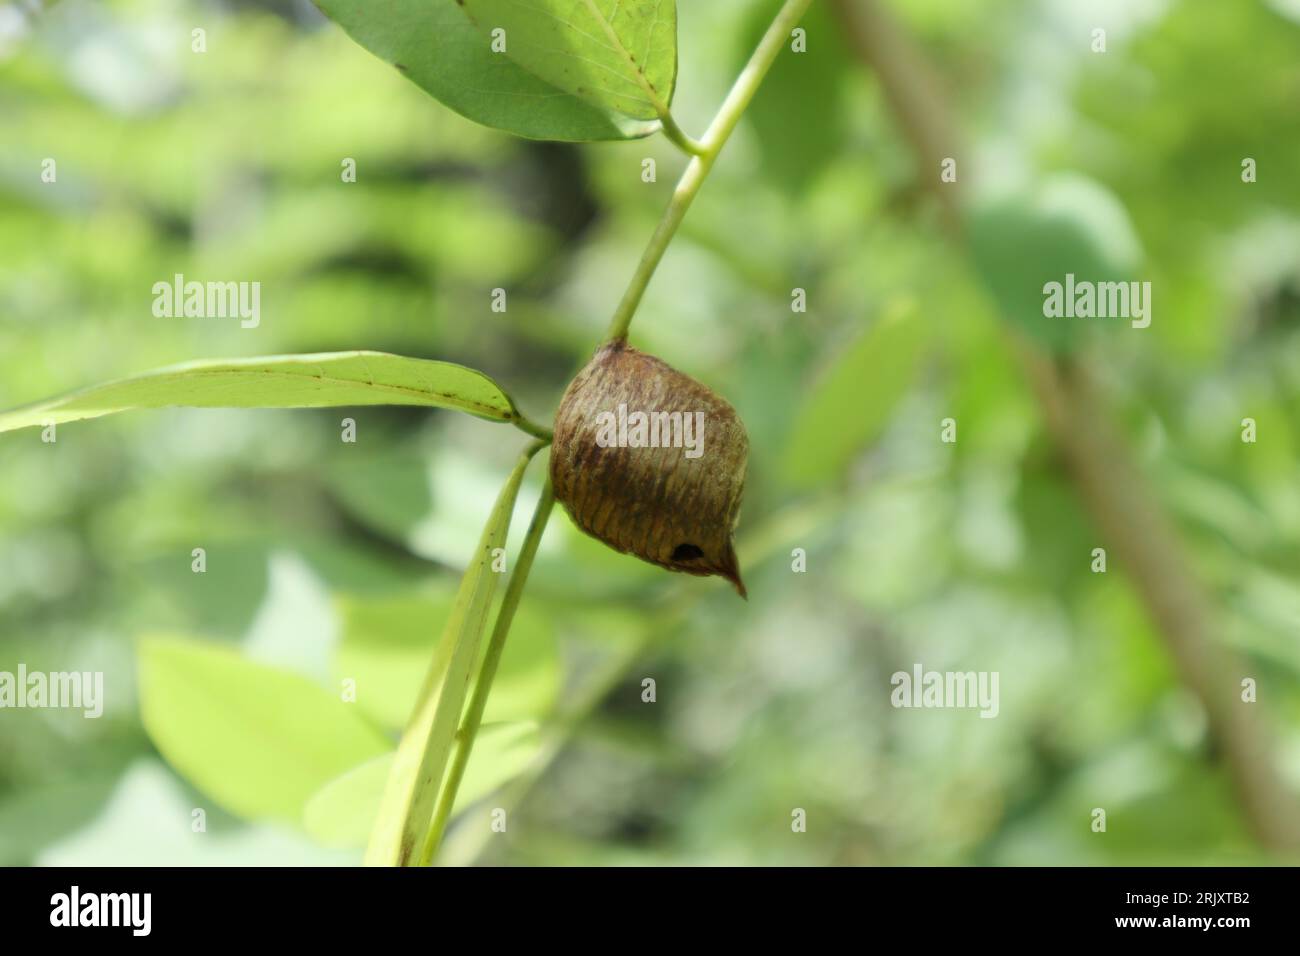 Vue rapprochée d'une mante religieuse ootheca (cas d'oeuf) sur une tige foliaire d'une plante de Gliricidia (Gliricidia sepium). Banque D'Images